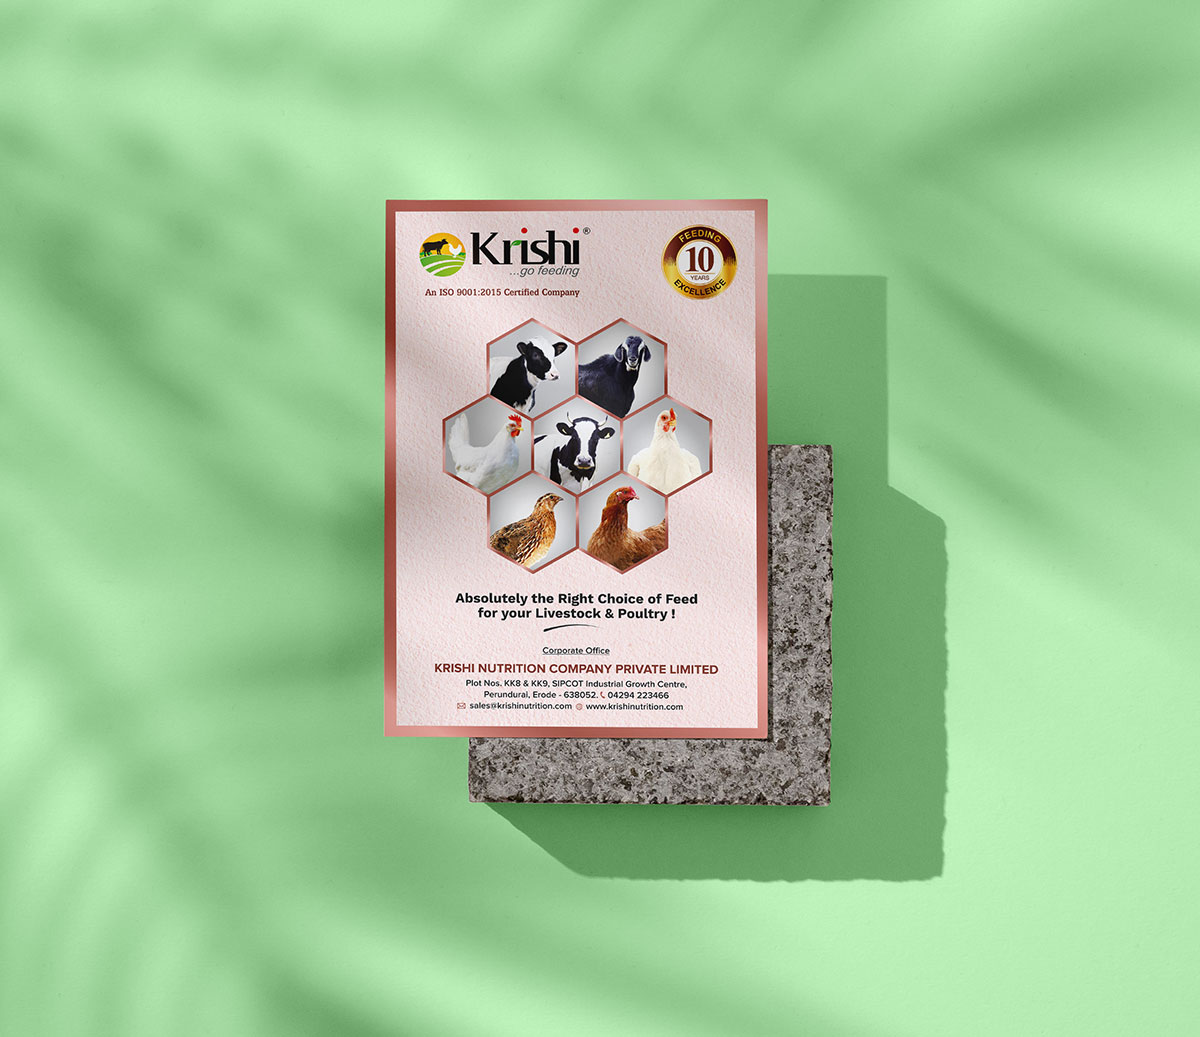 Krishi-card